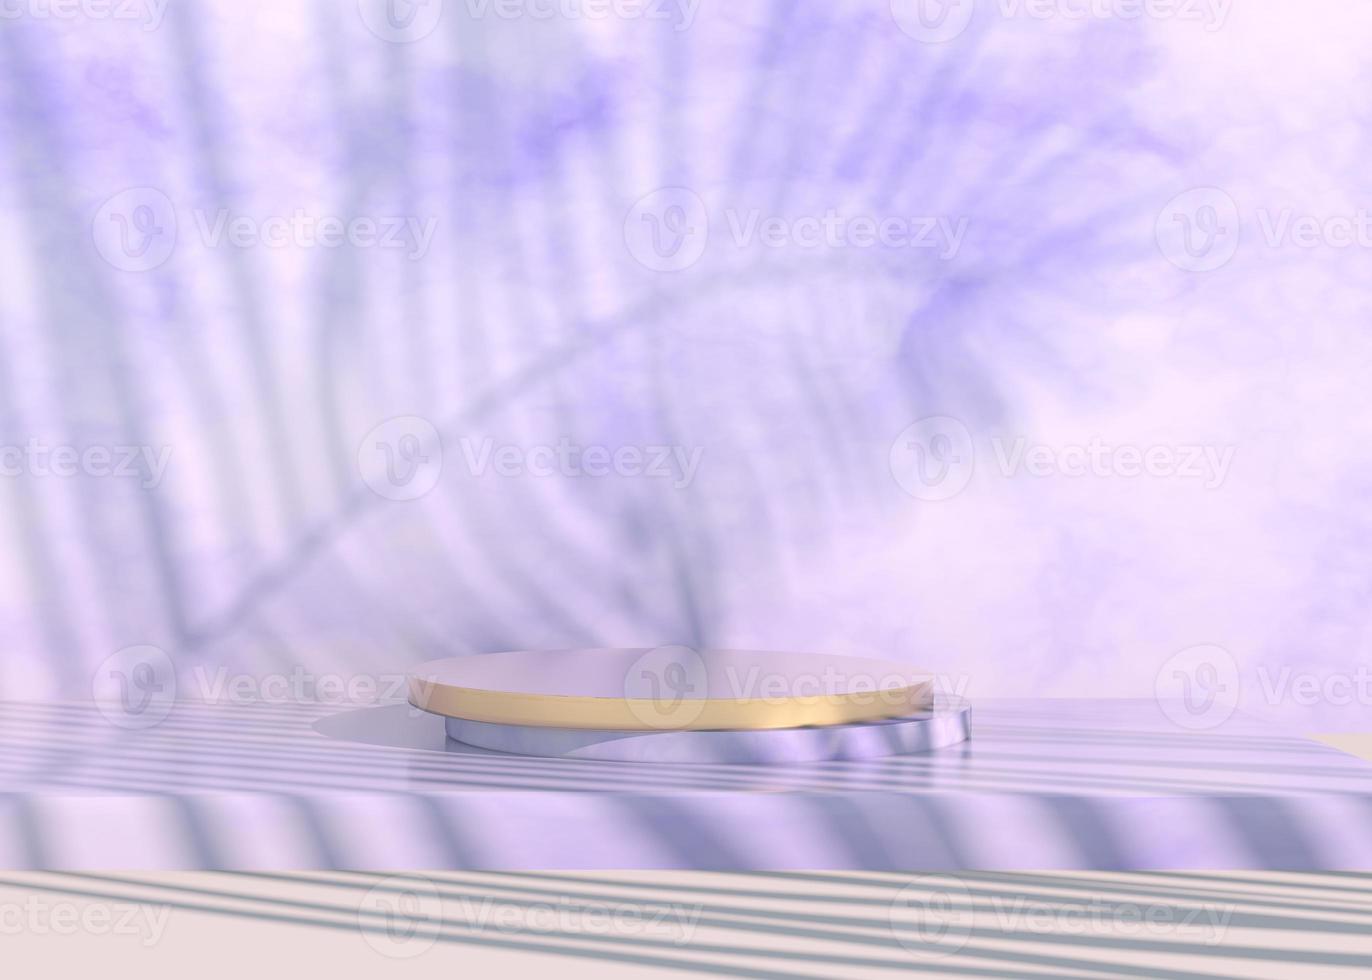 pódio com sombras de folhas de palmeira para apresentação de produtos cosméticos. vazio vitrine pedestal cenário simulado acima. Renderização 3D. foto